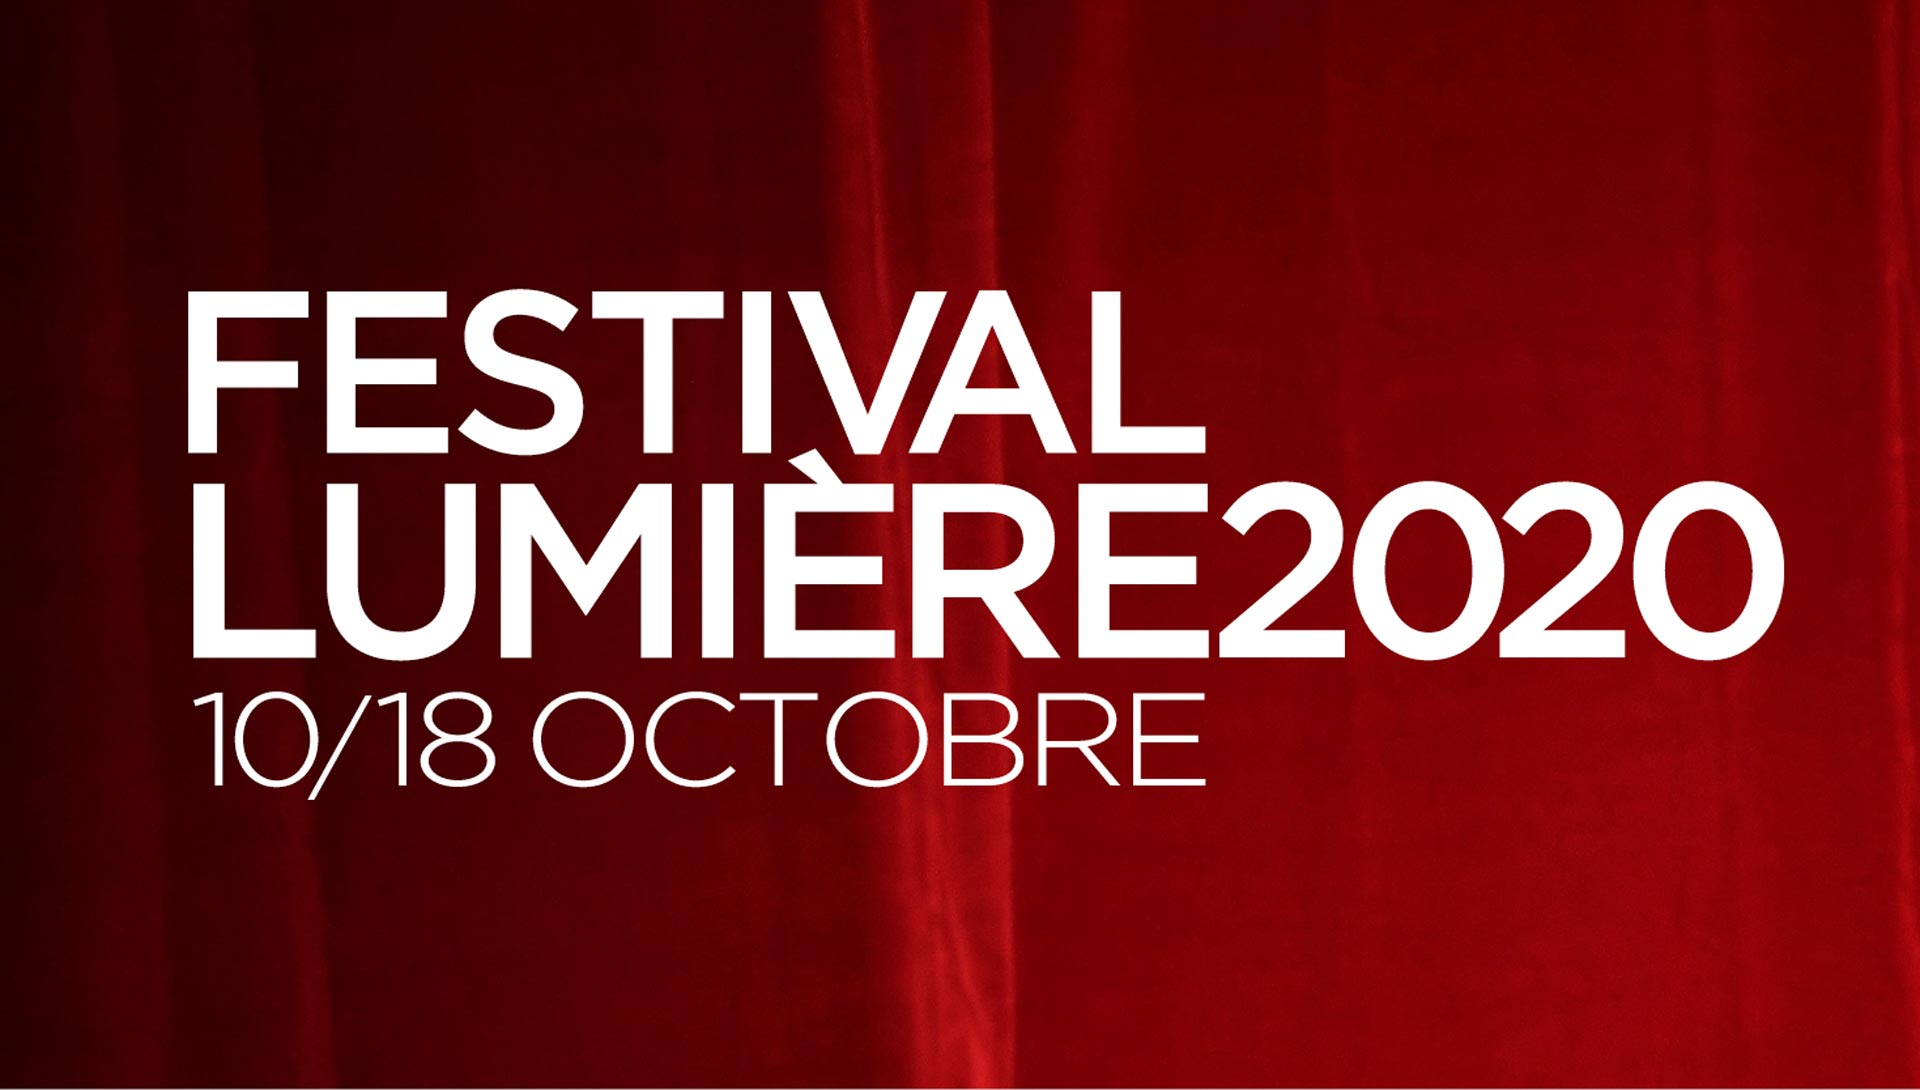 Festival-lumiere-2020-